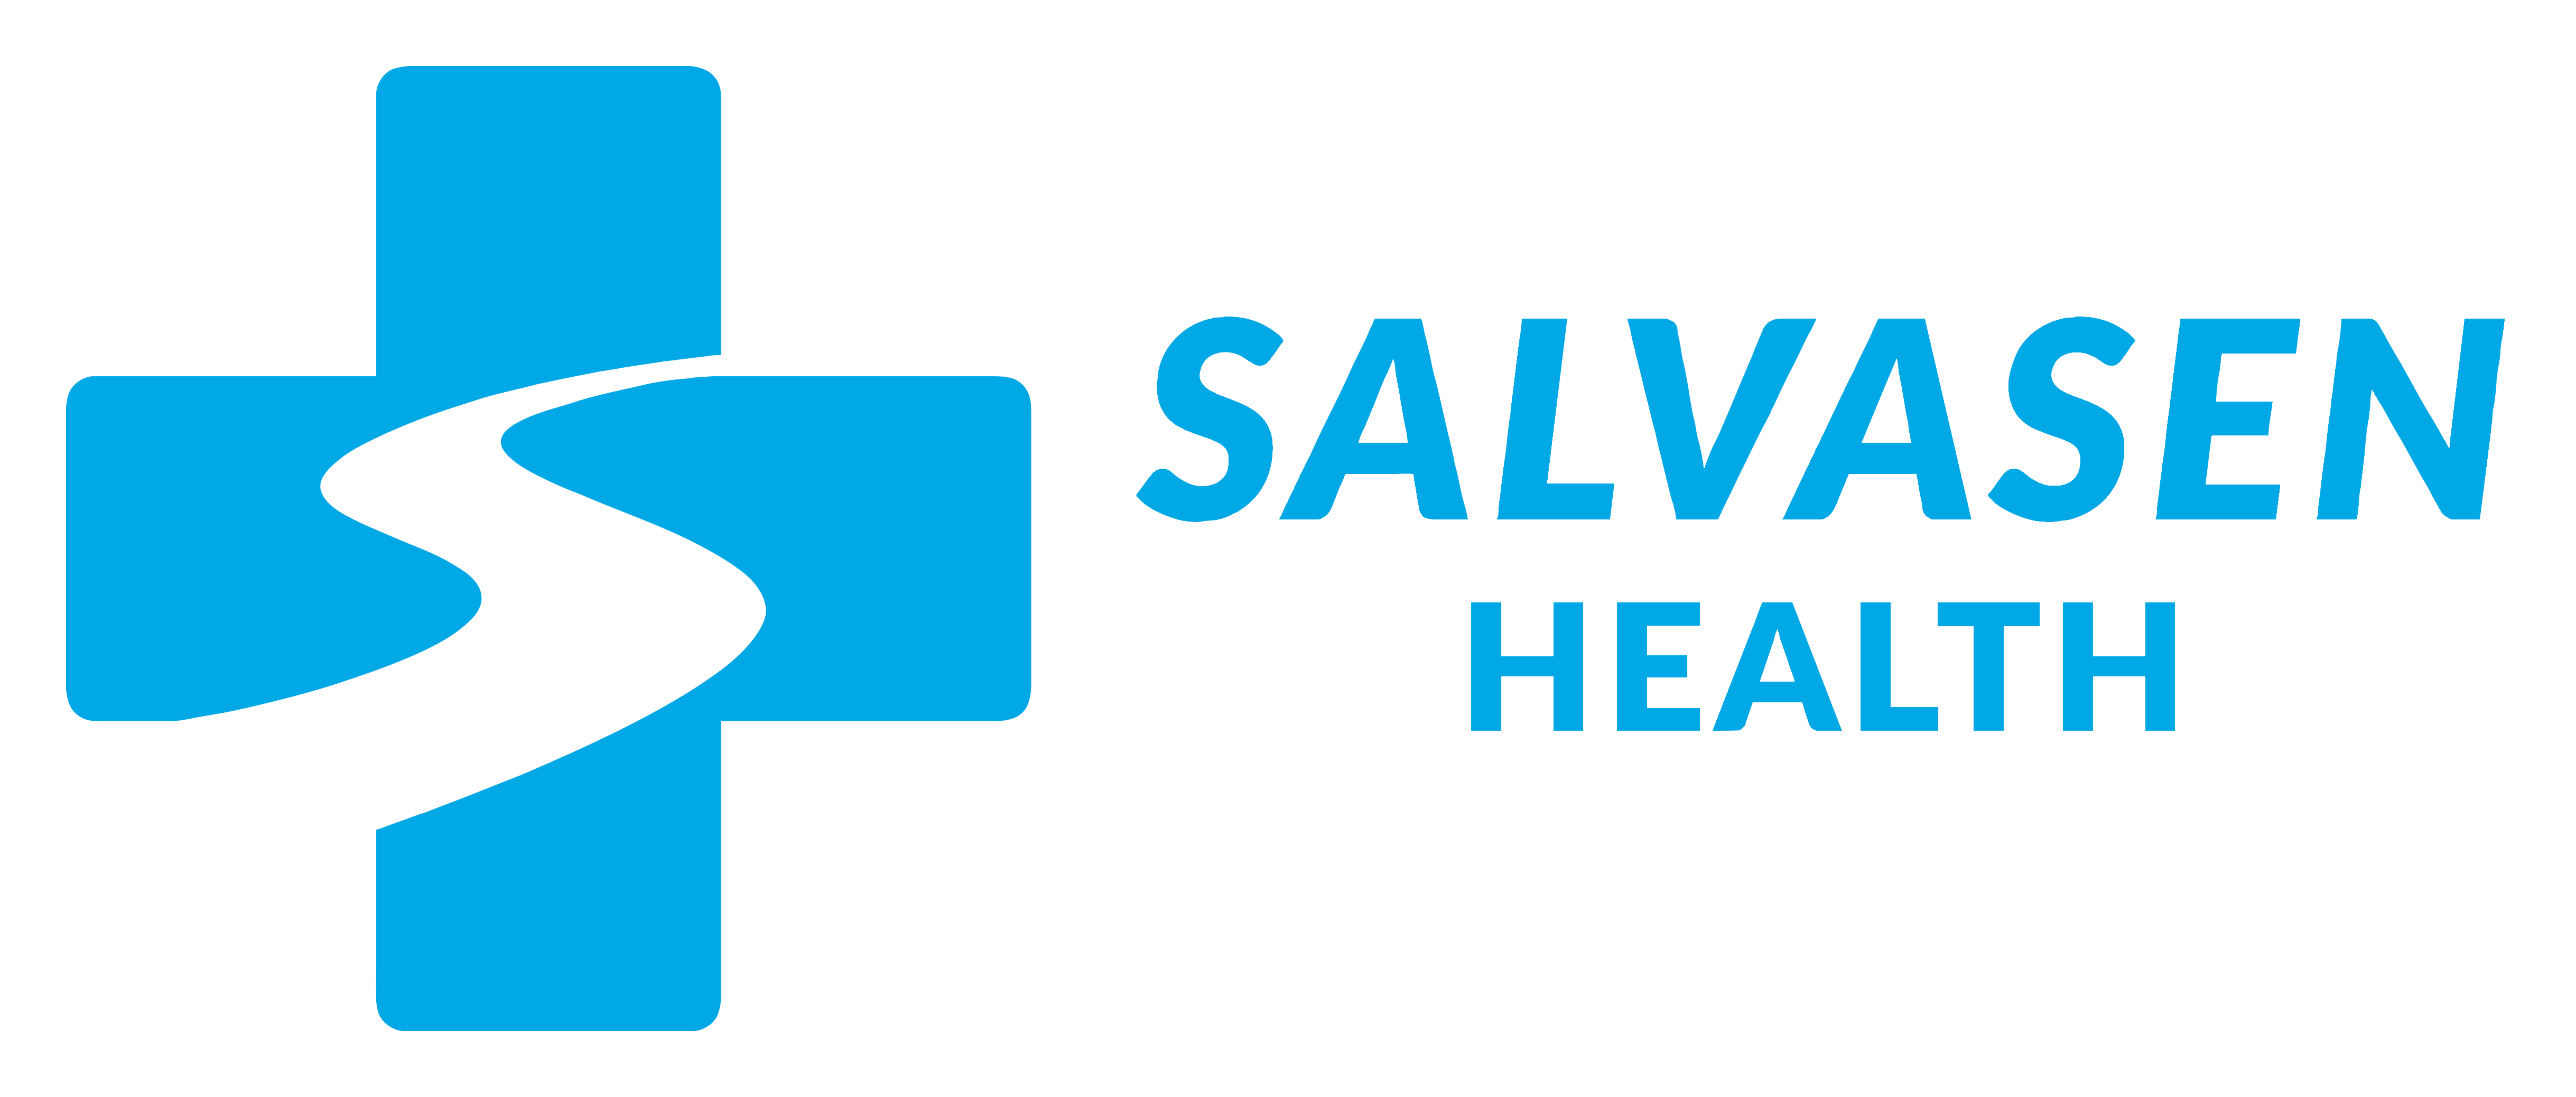 Salvasen Health